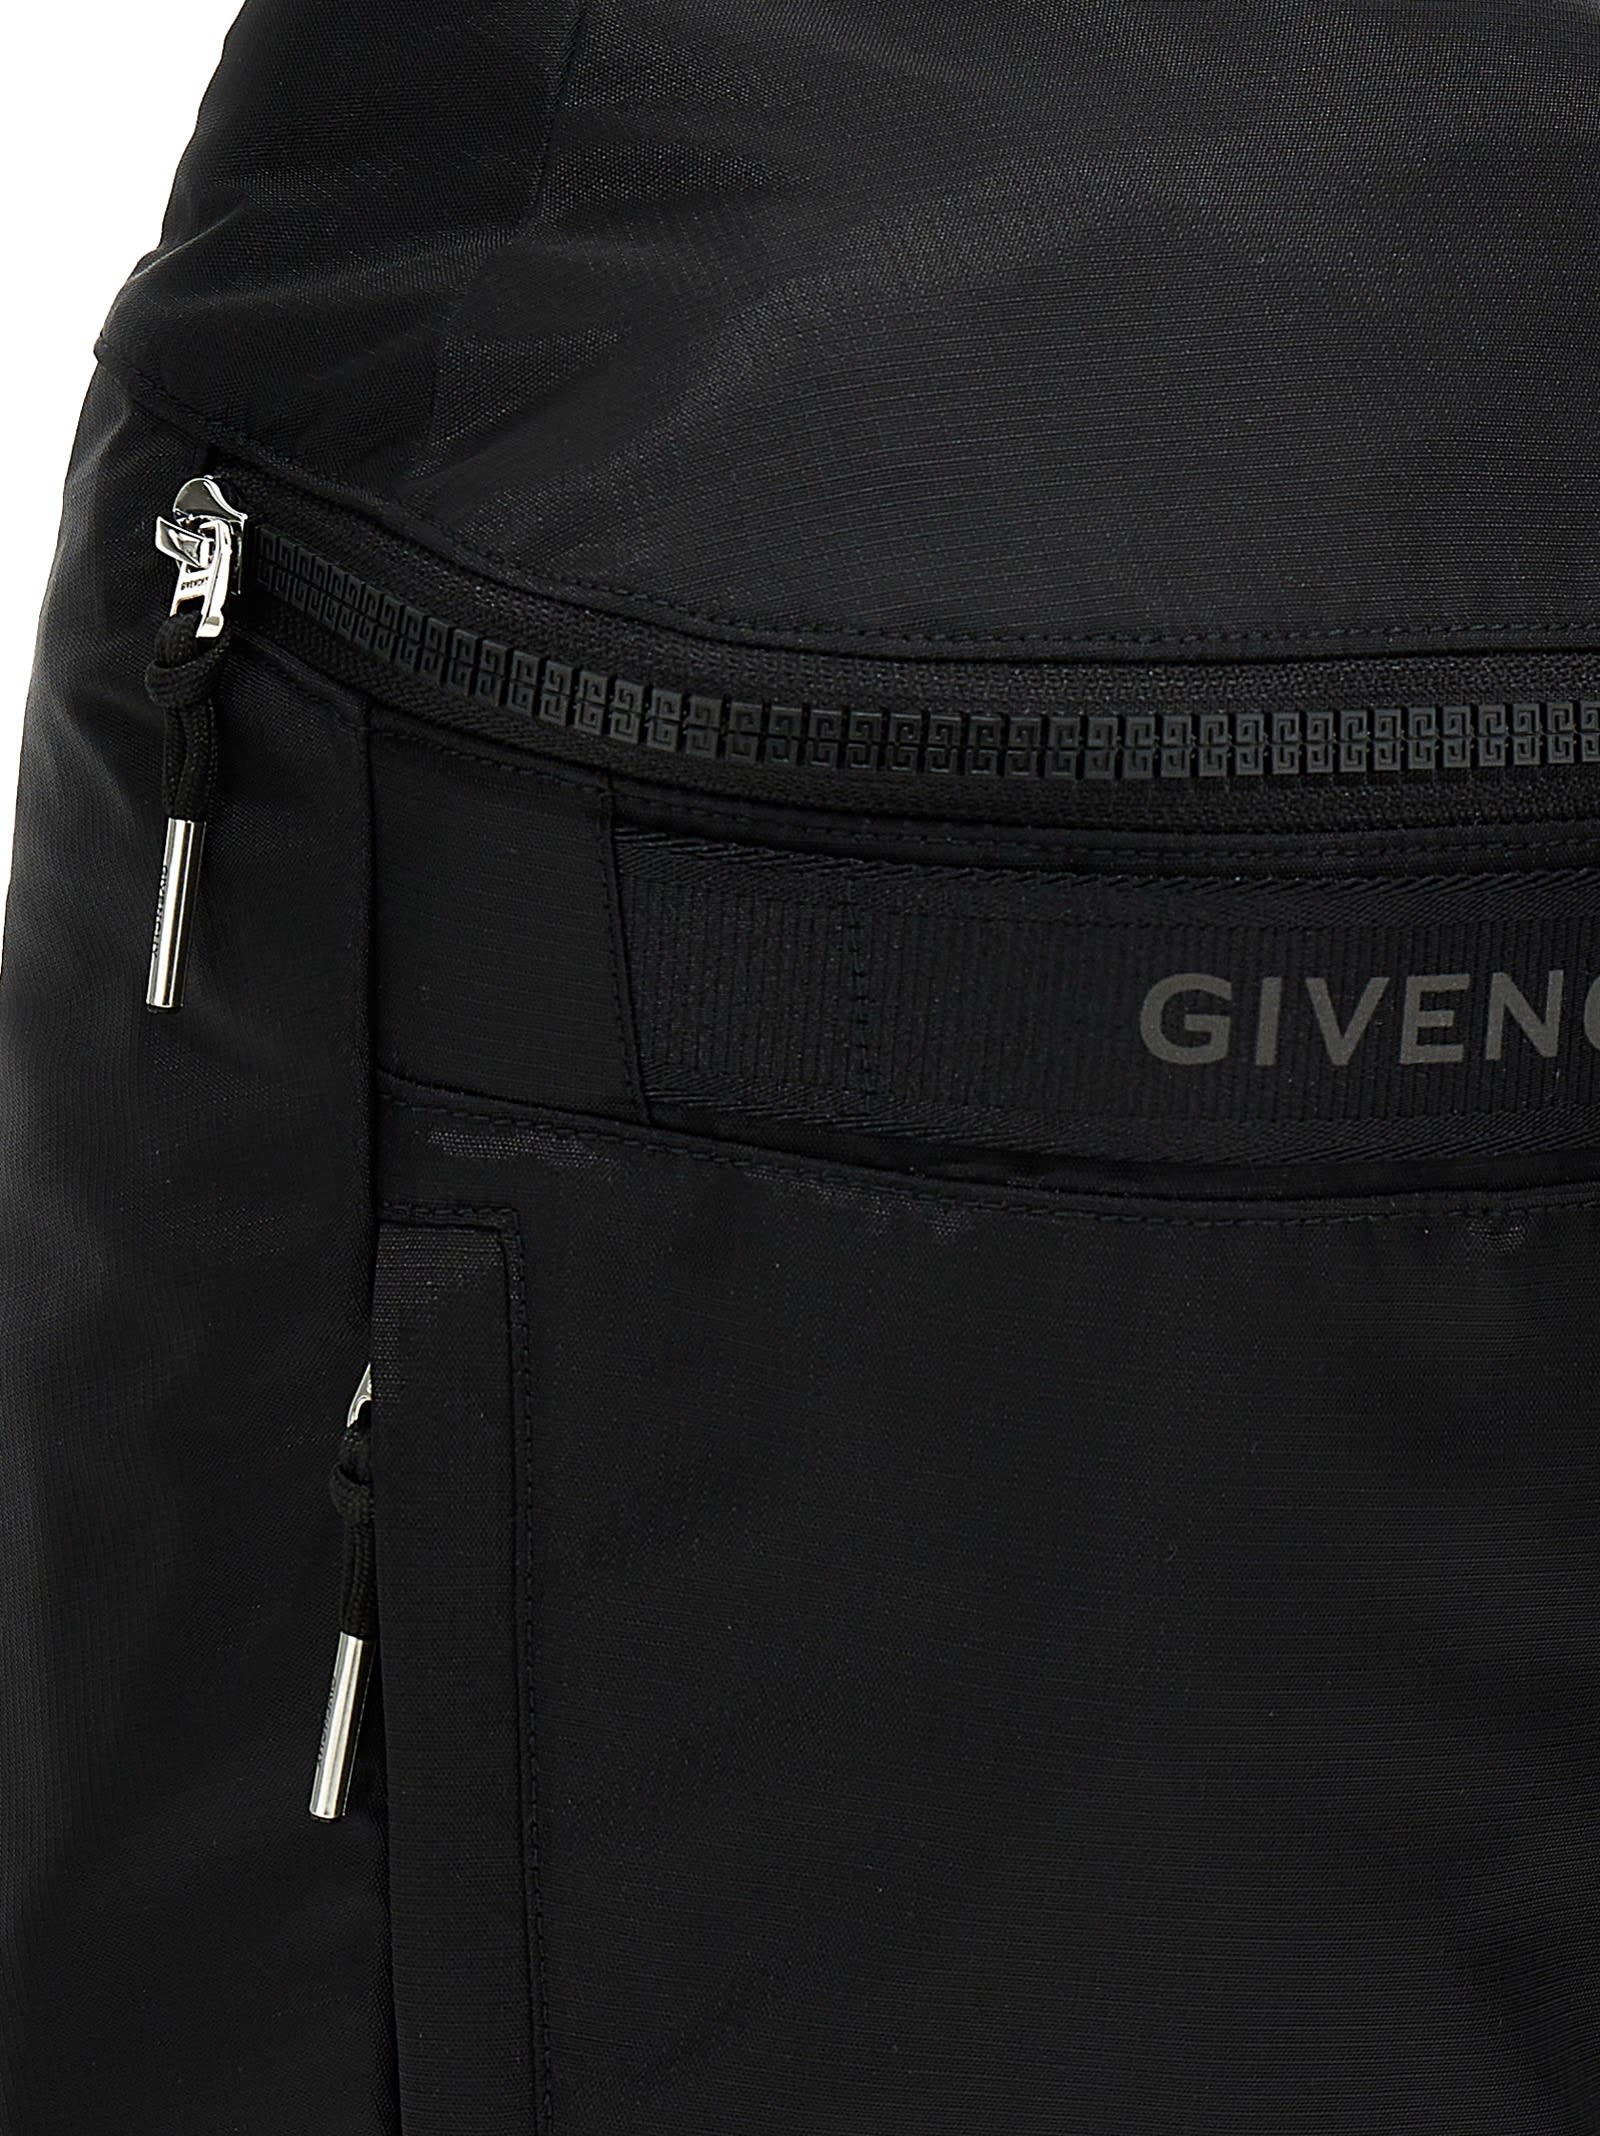 Shop Givenchy G-trek Backpack In Black